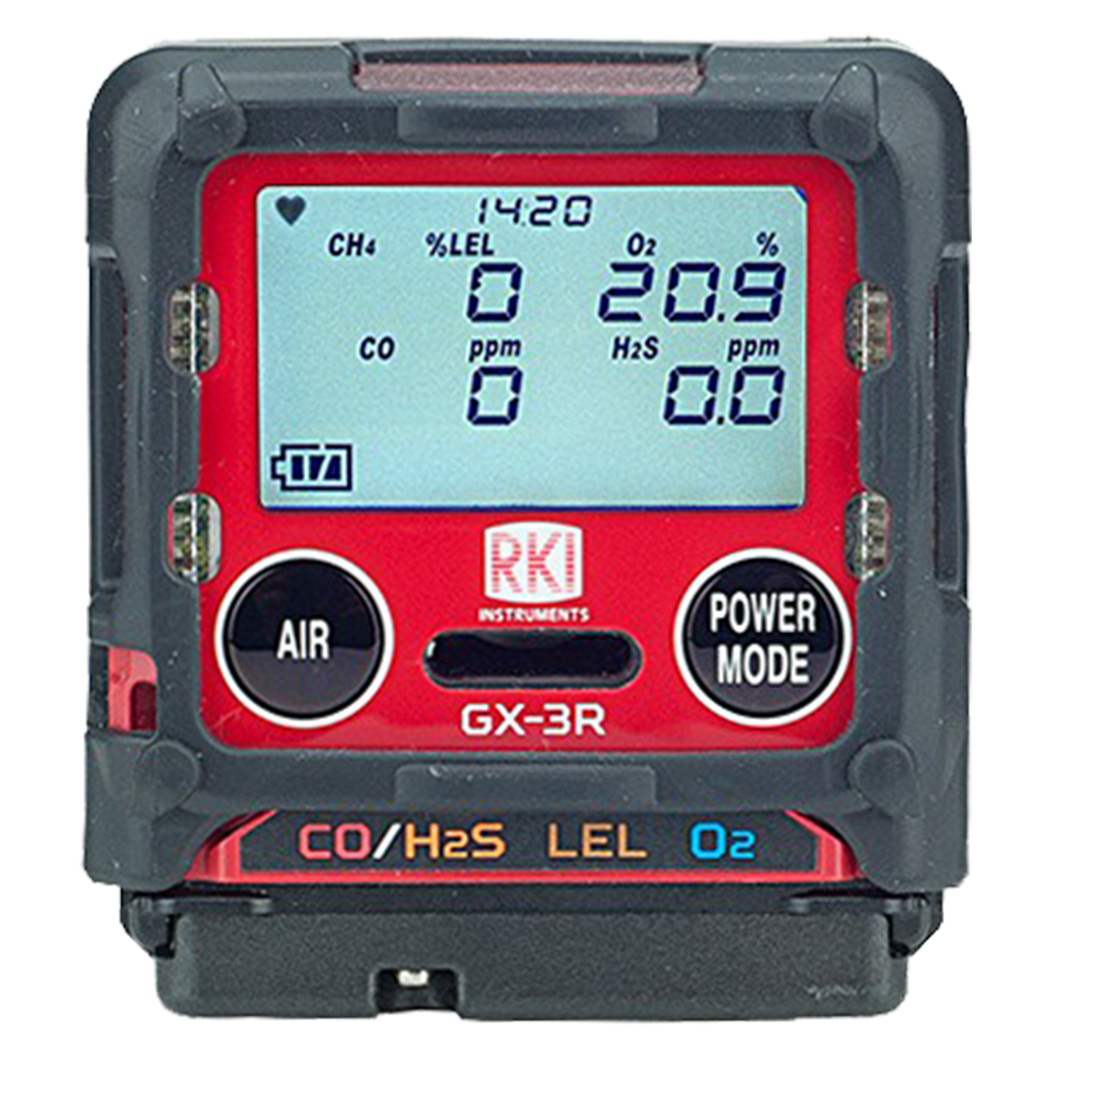 RKI GX-3R Personal Gas Monitor